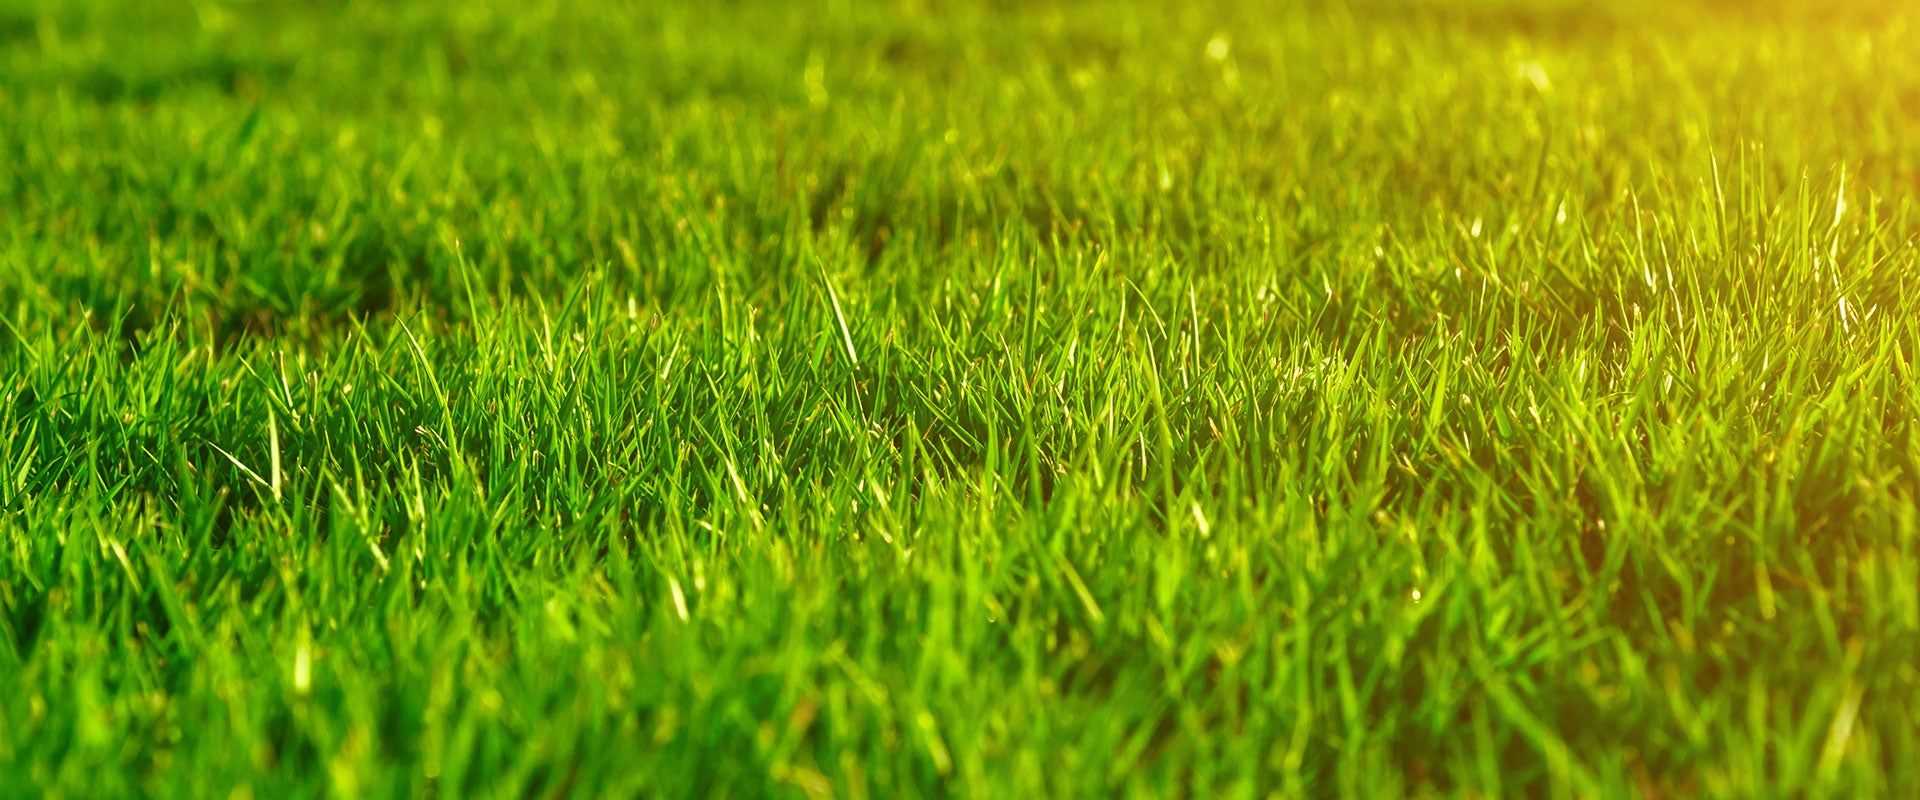 beautiful green grass